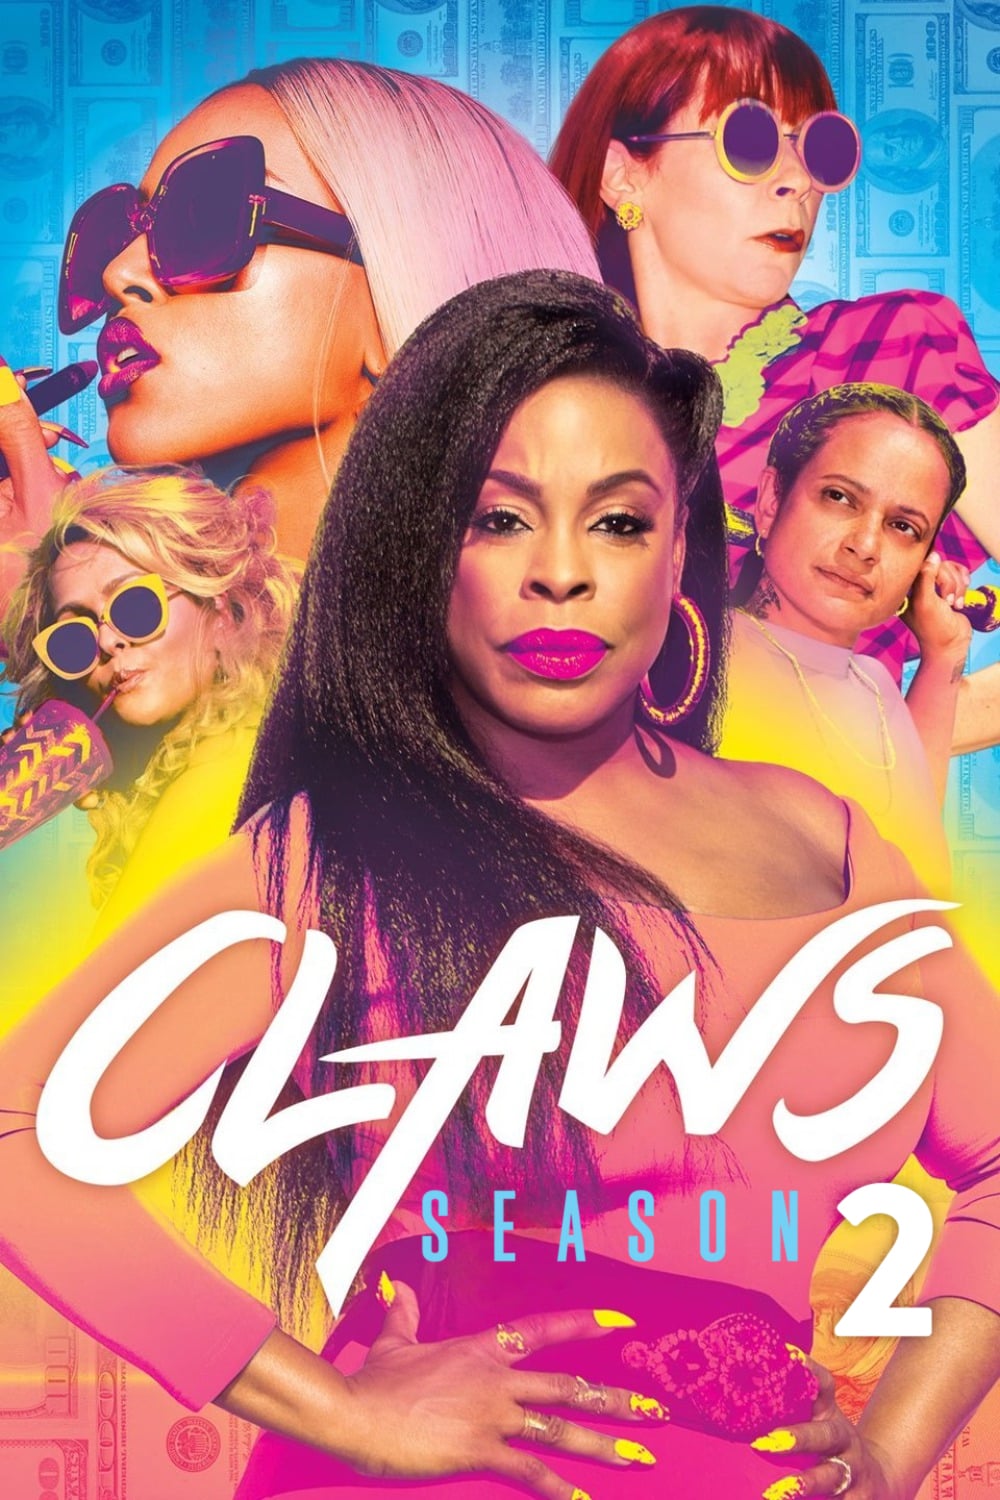 Claws - Saison 2